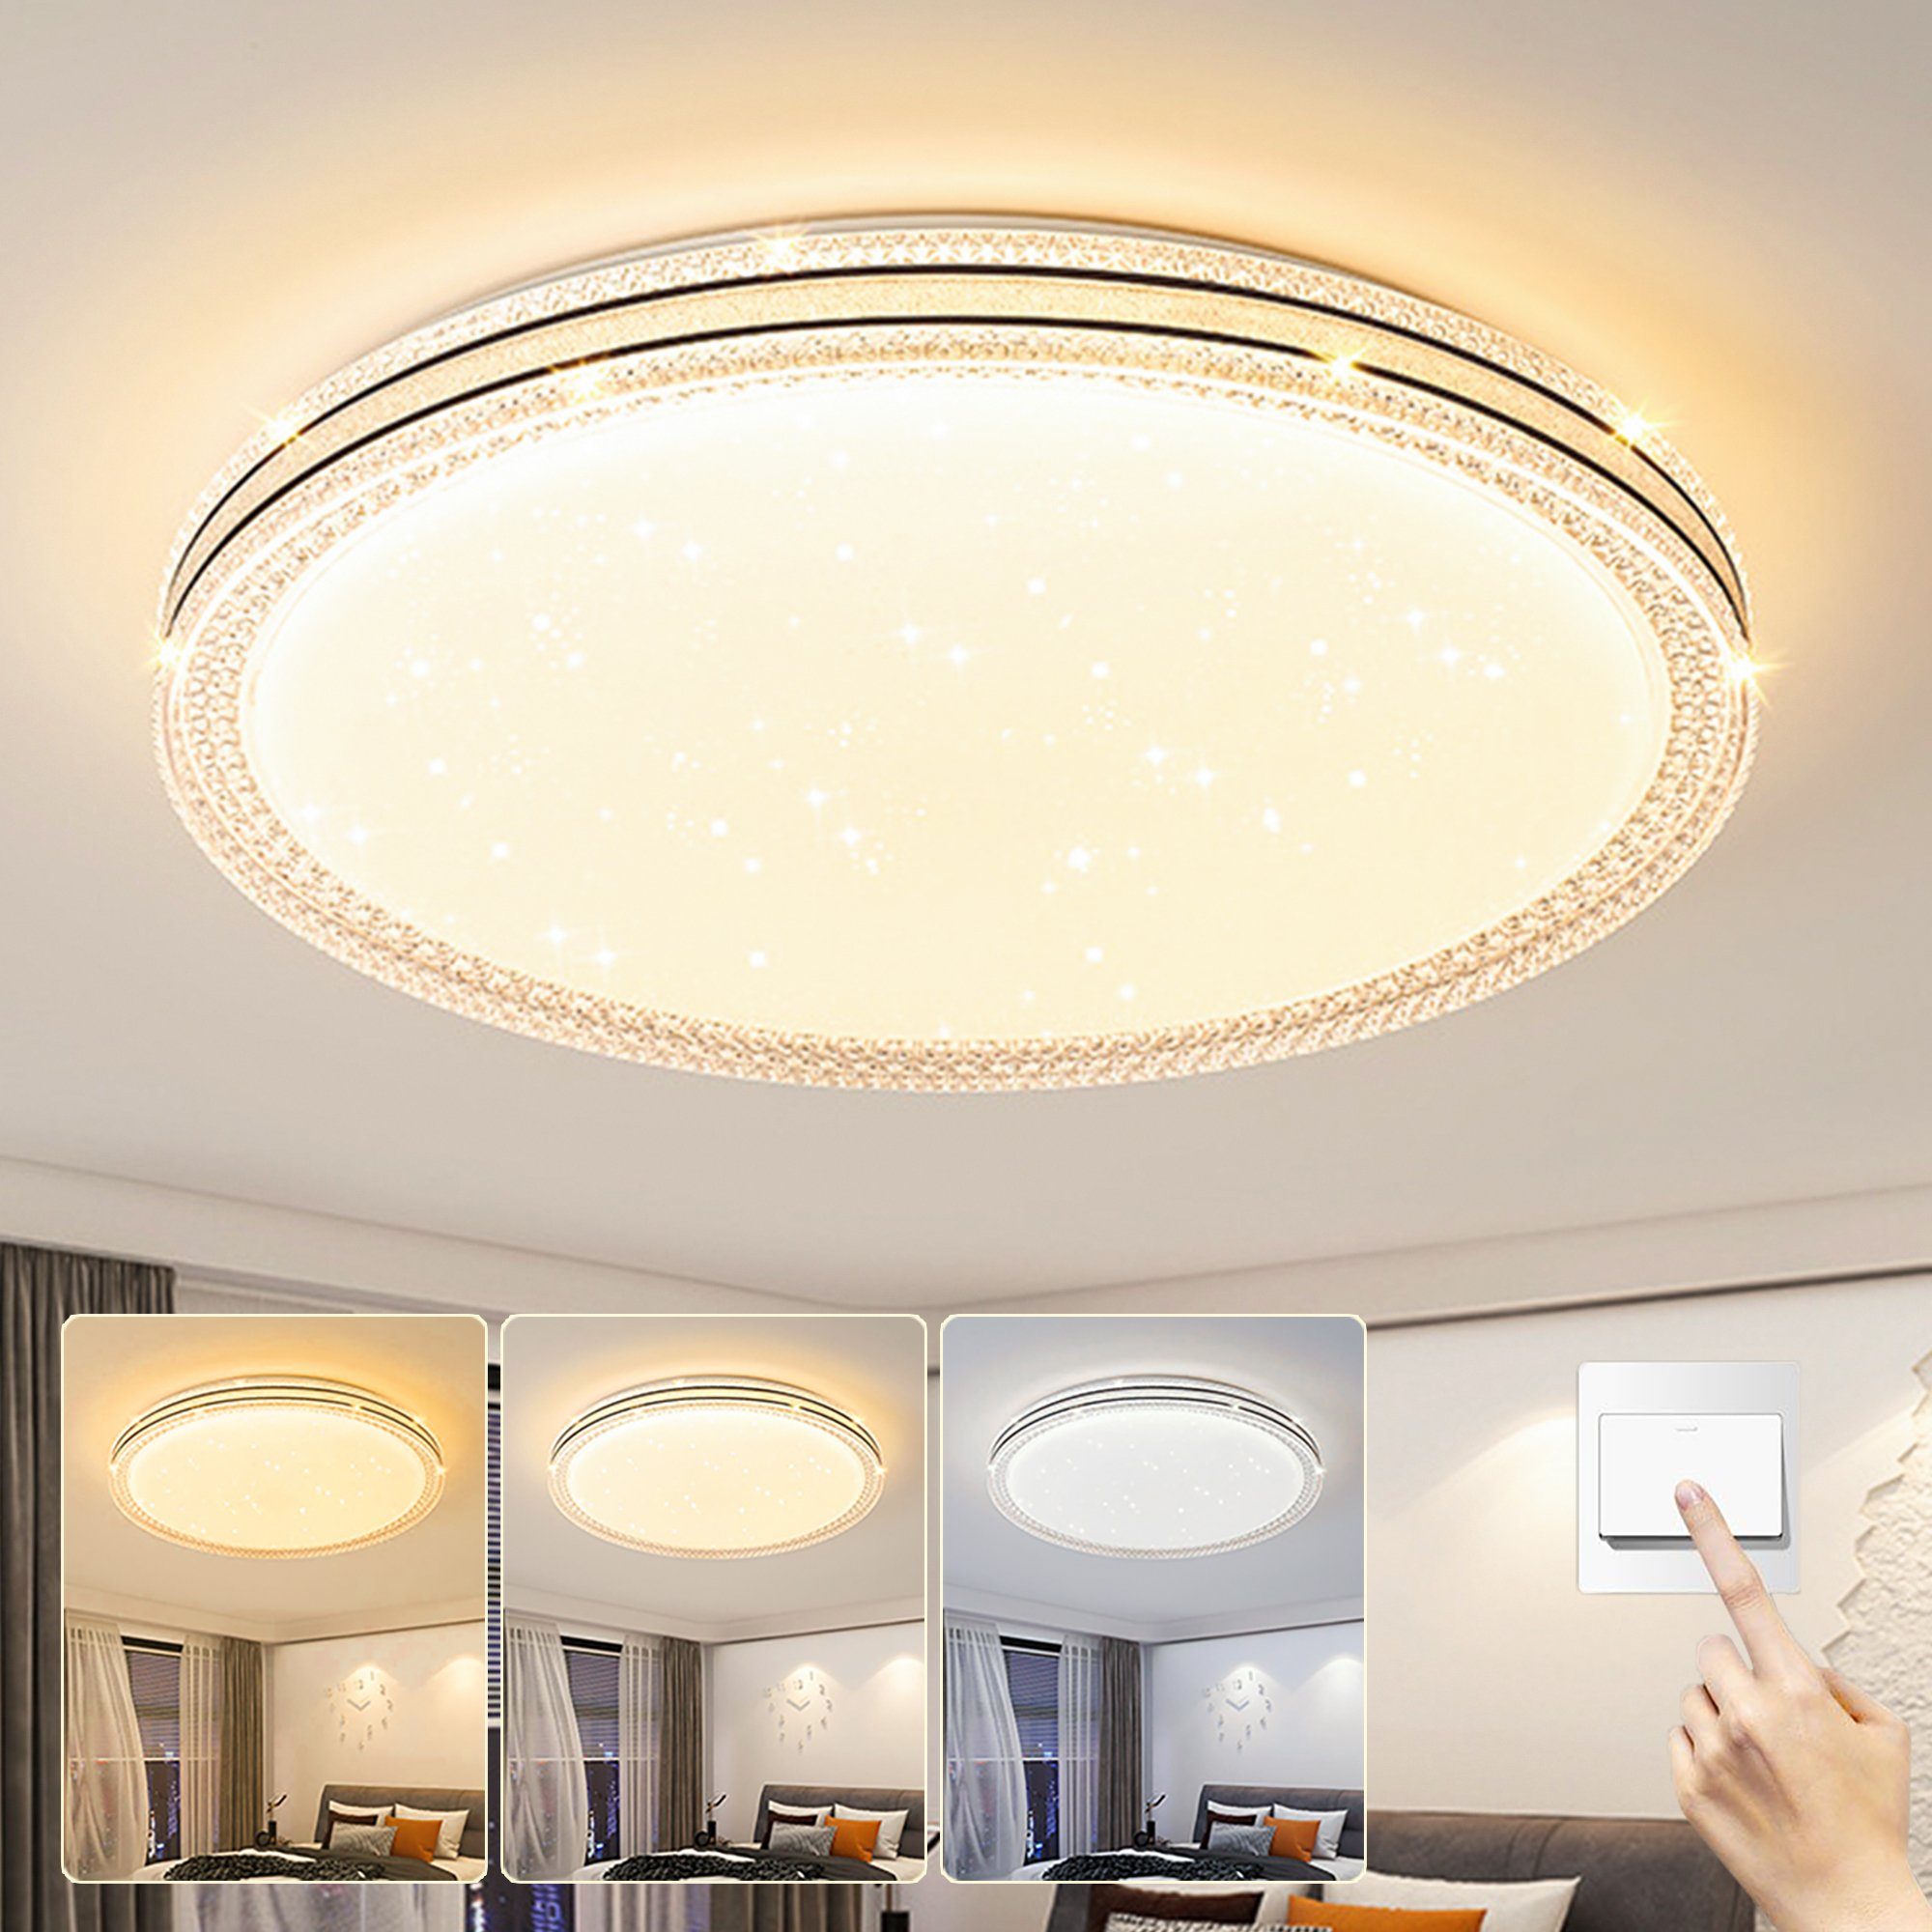 KUGI Deckenleuchten Deckenlampe LED Deckenleuchte für Bad/Schlafzimmer/Keller/Balkon 2x36W,3000K-6000K,Ø35cm/Ø45cm, Decke Flach Küchenlampen Badlampe